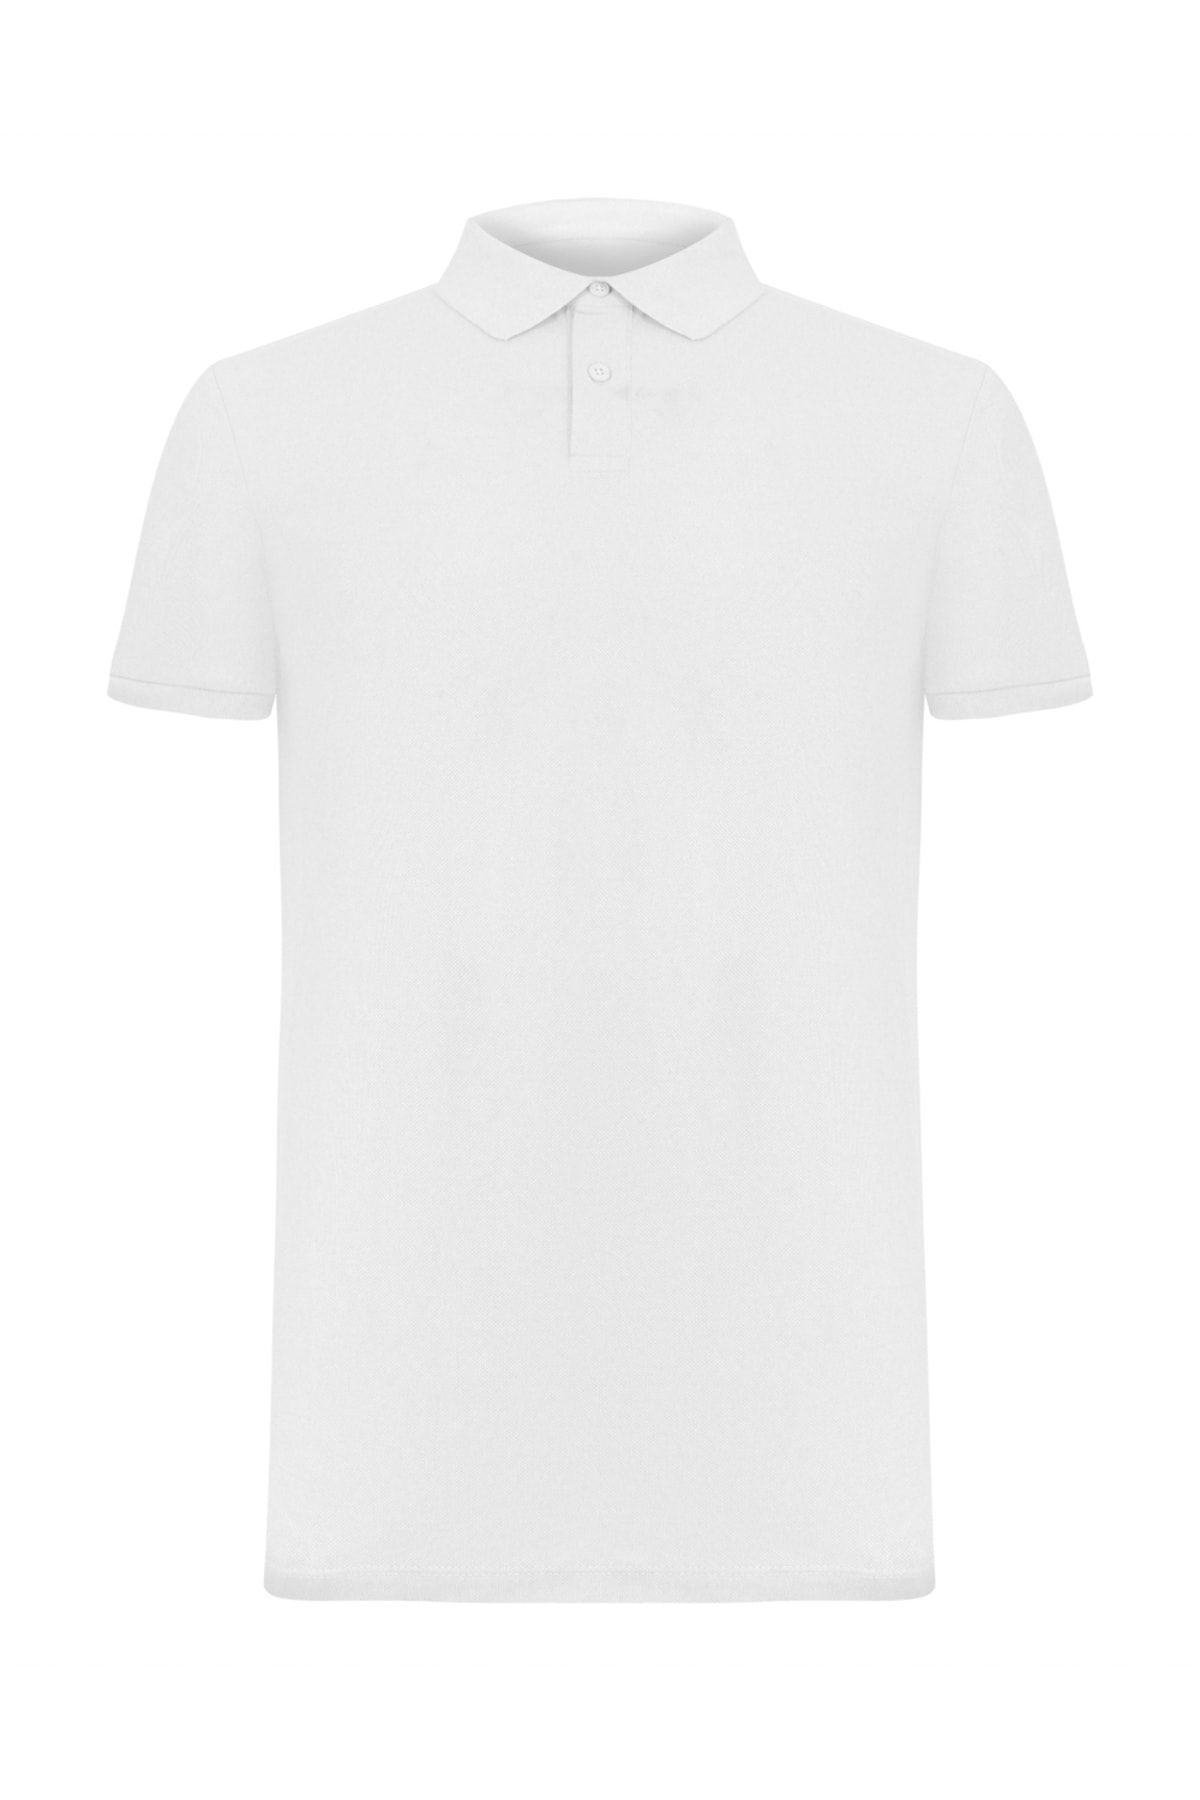 Mudo Erkek Beyaz Polo Yaka Pamuk T-Shirt 375626